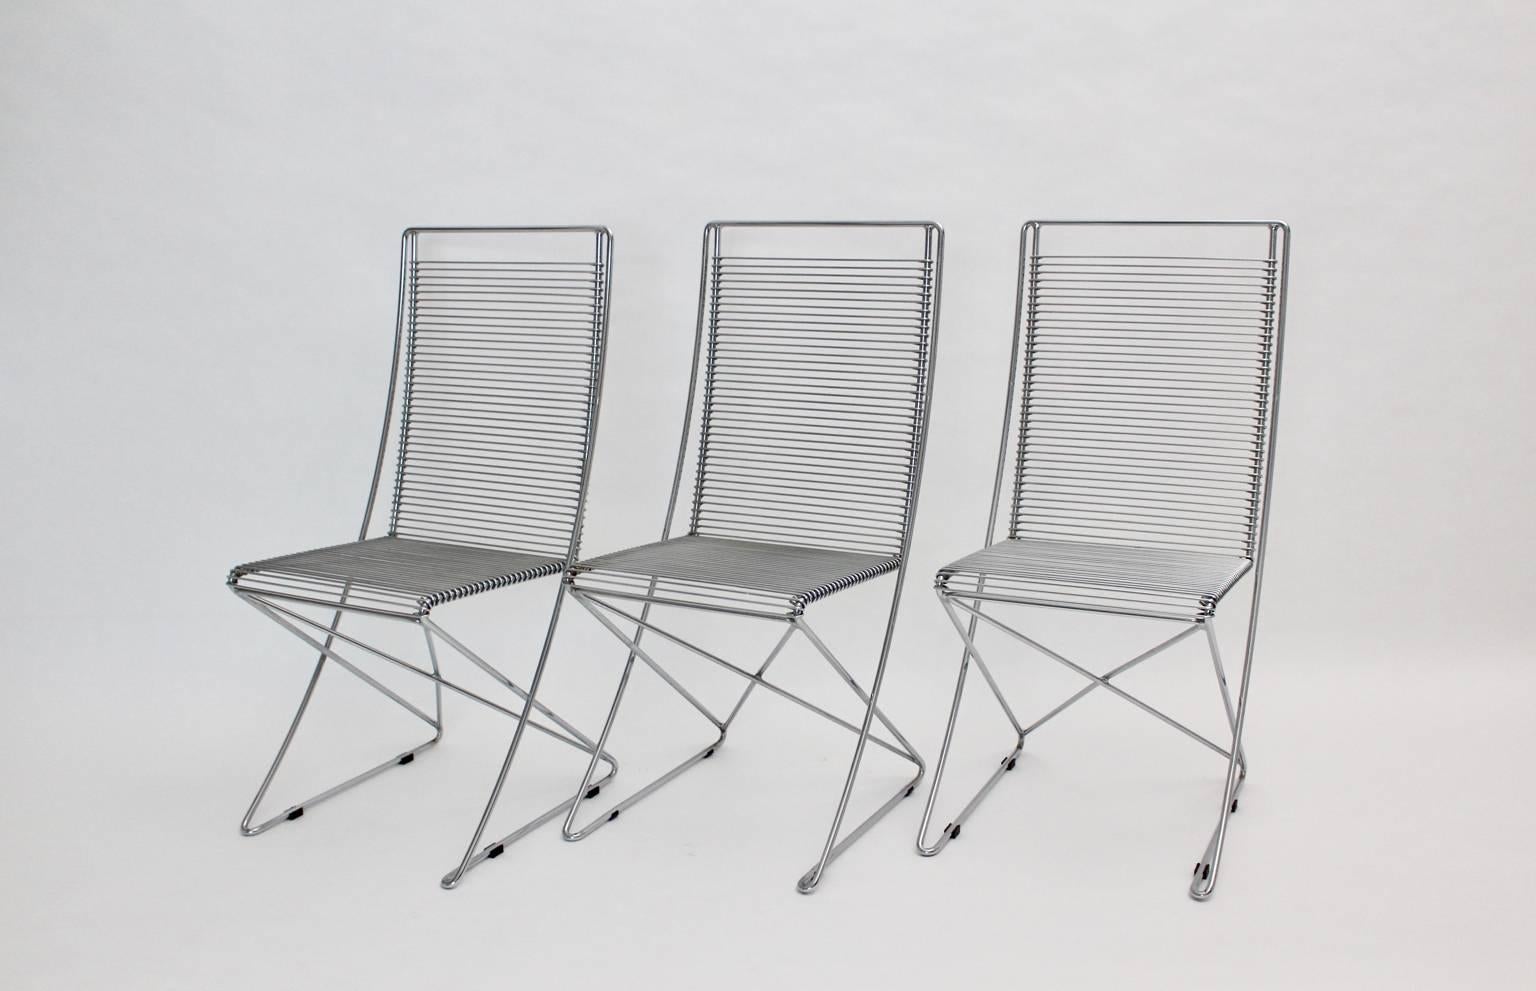 Verchromte Stahldraht-Vintage-Stühle Kreuzschwinger von Till Behrens, 1983, Deutschland (Moderne)